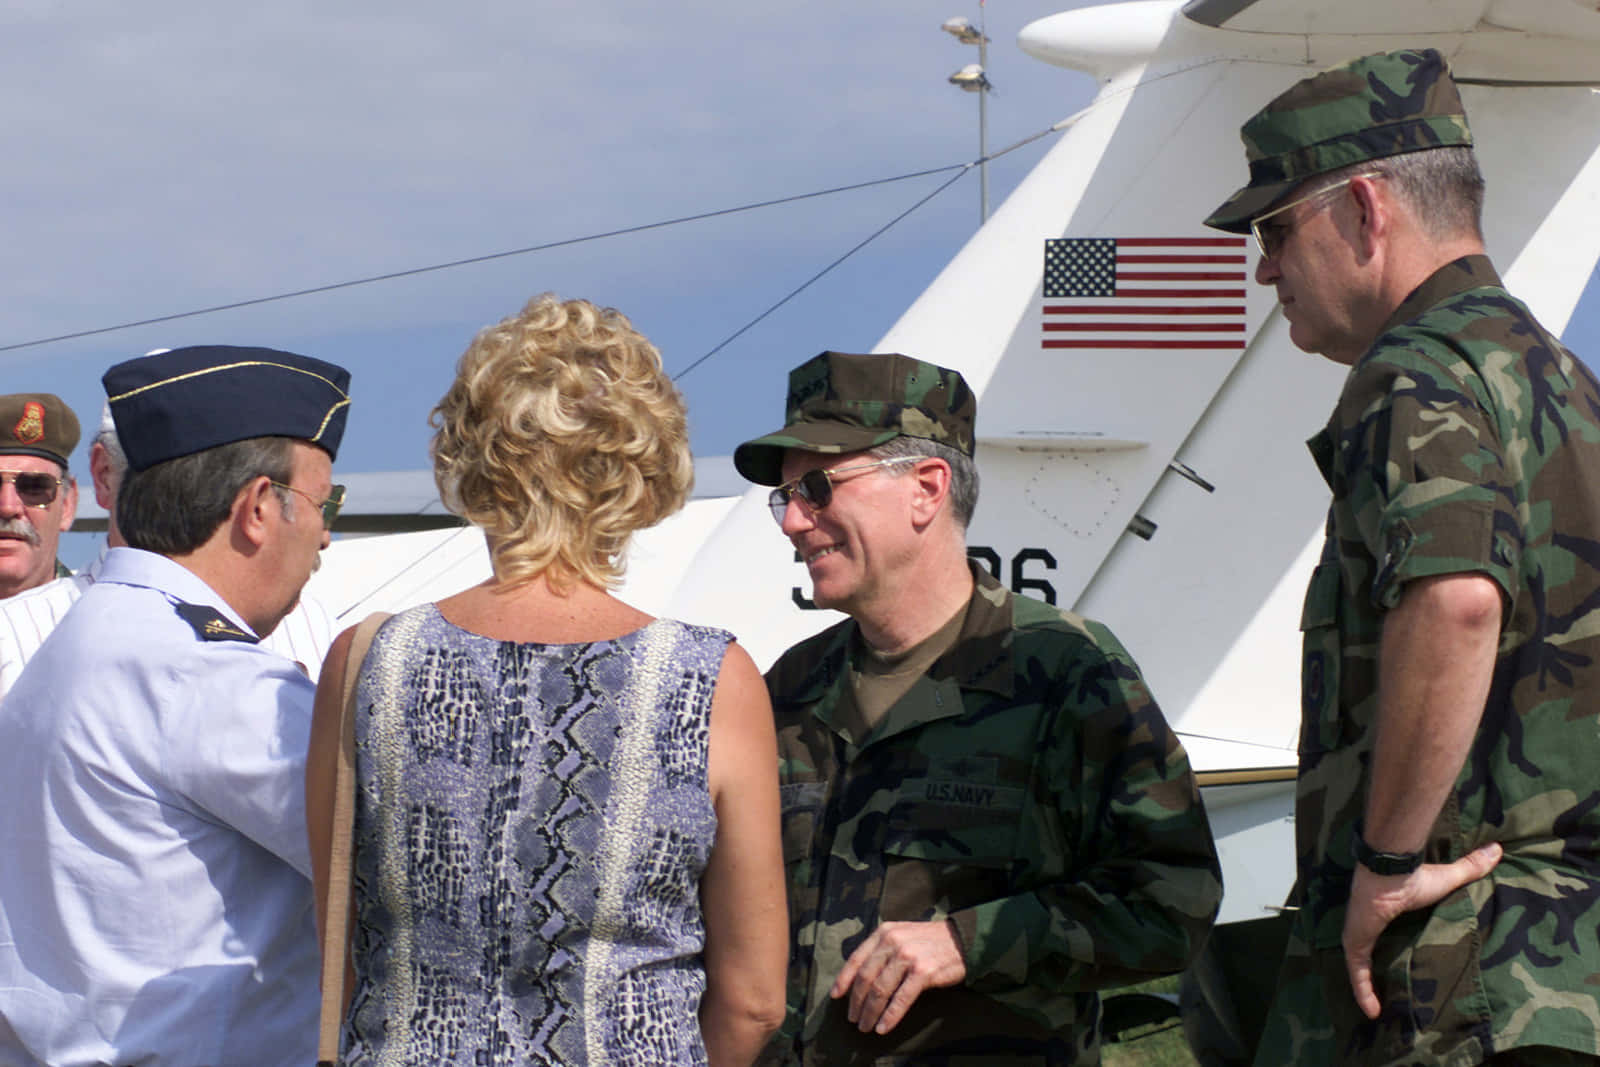 Rindehomenaje A Los Valientes Hombres Y Mujeres De La Armada De Los Estados Unidos.